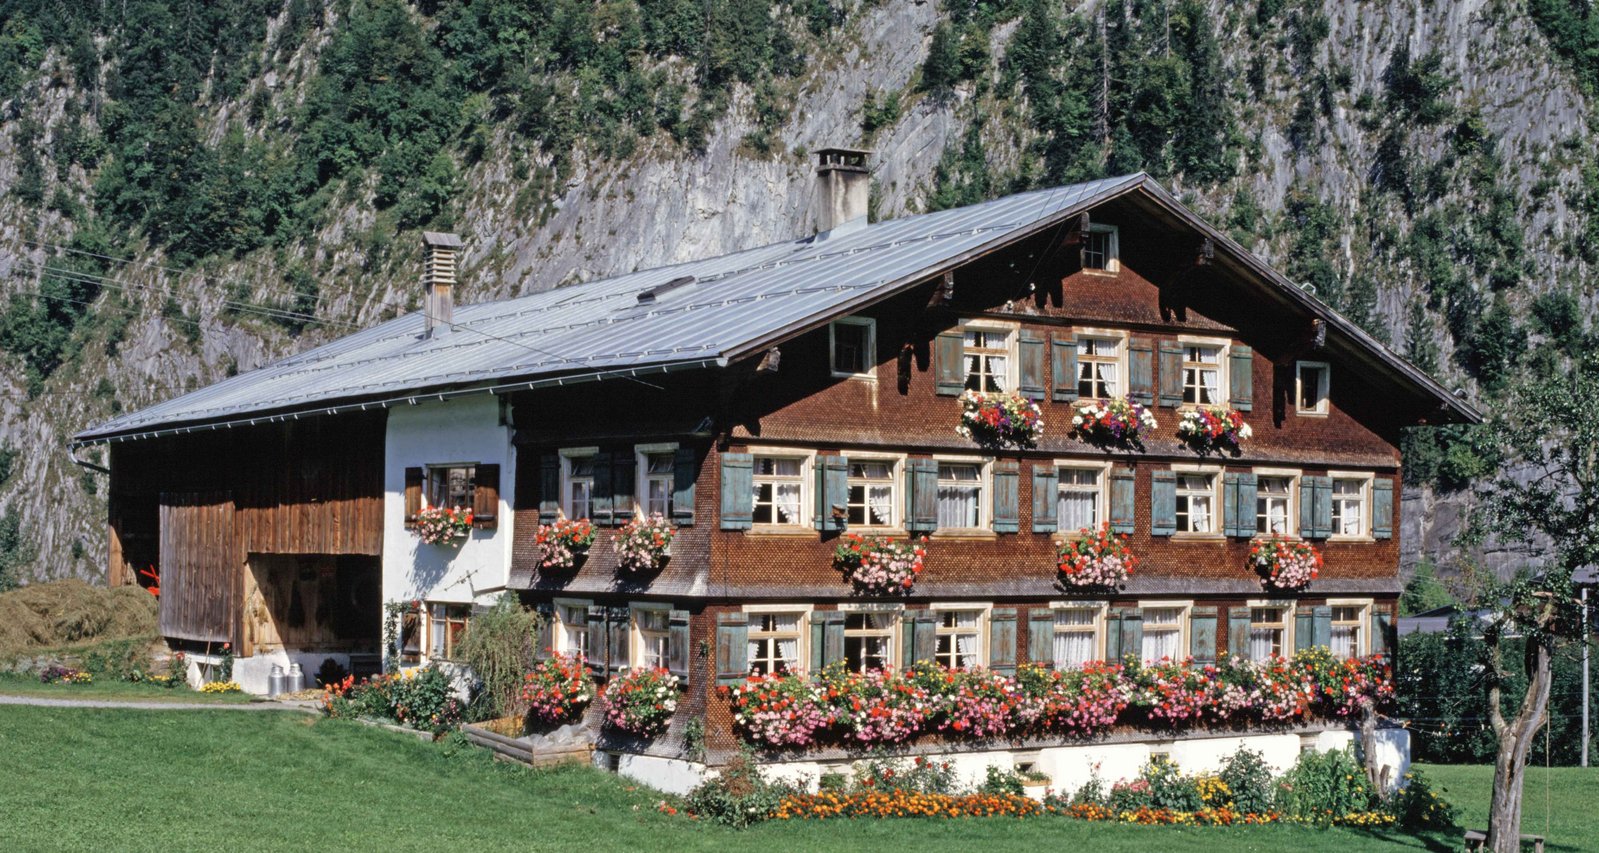  Wälderhaus bei Au, Foto: Helmut Klapper, Vorarlberger Landesbibliothek 